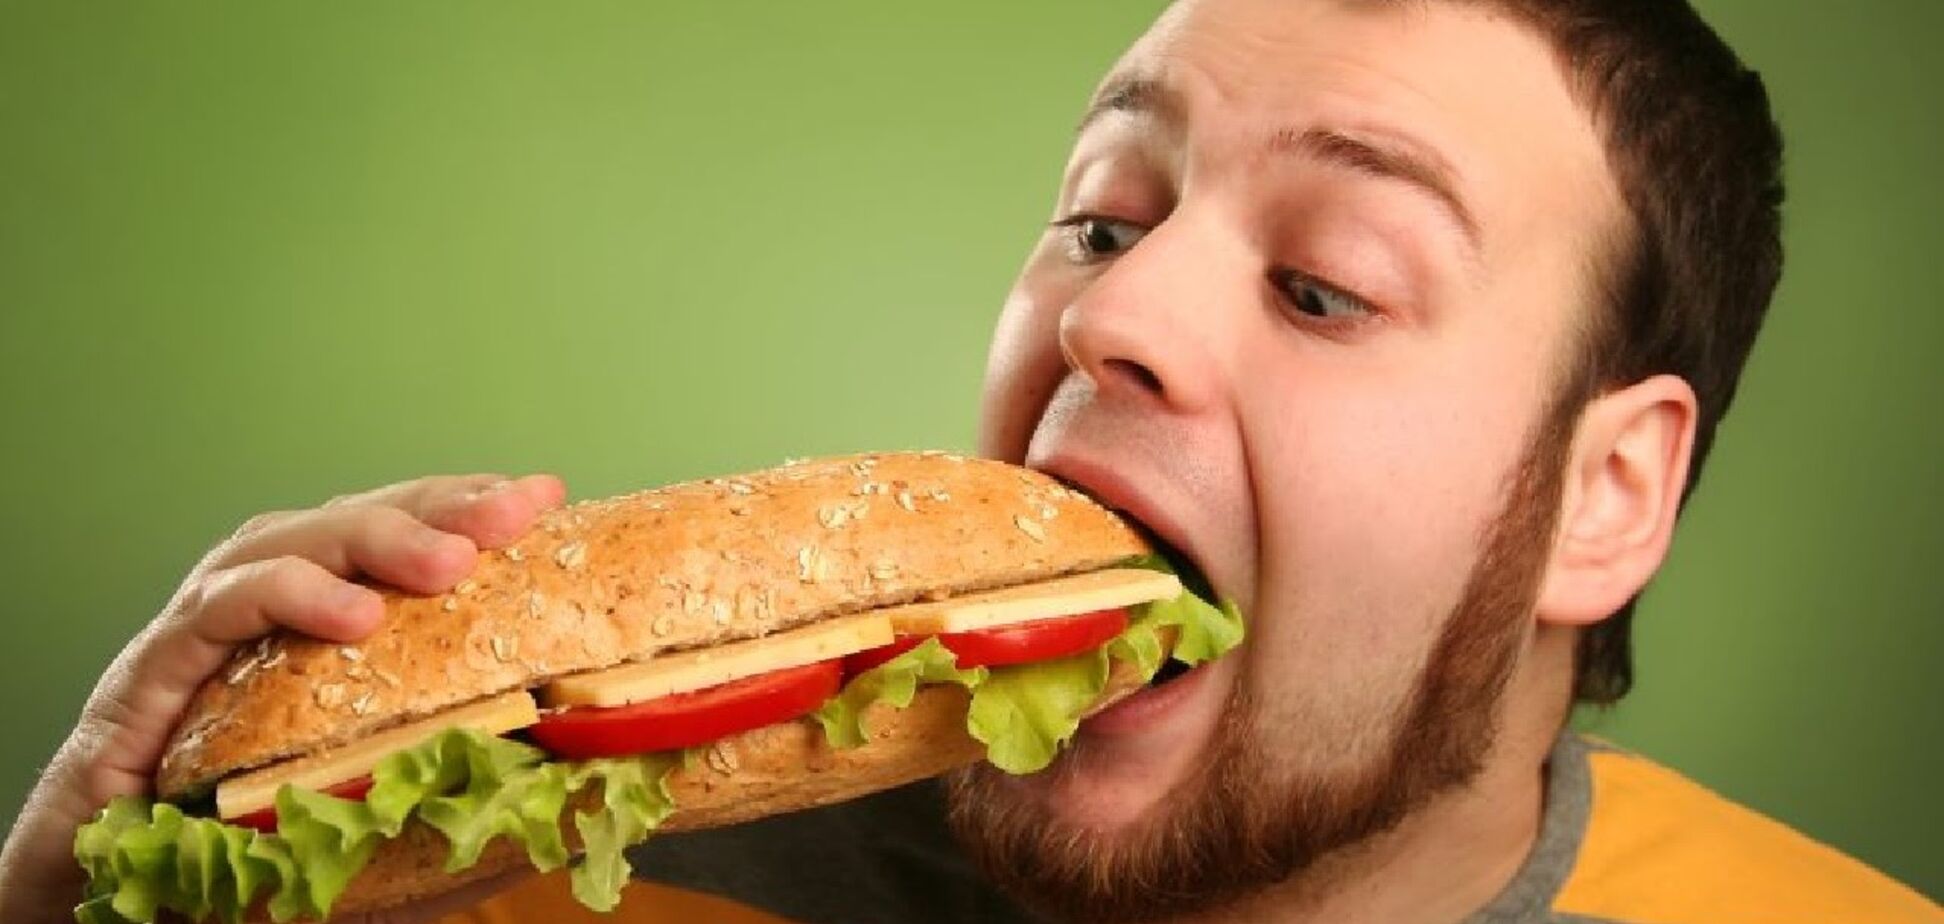 Психология аппетита: почему мы переедаем